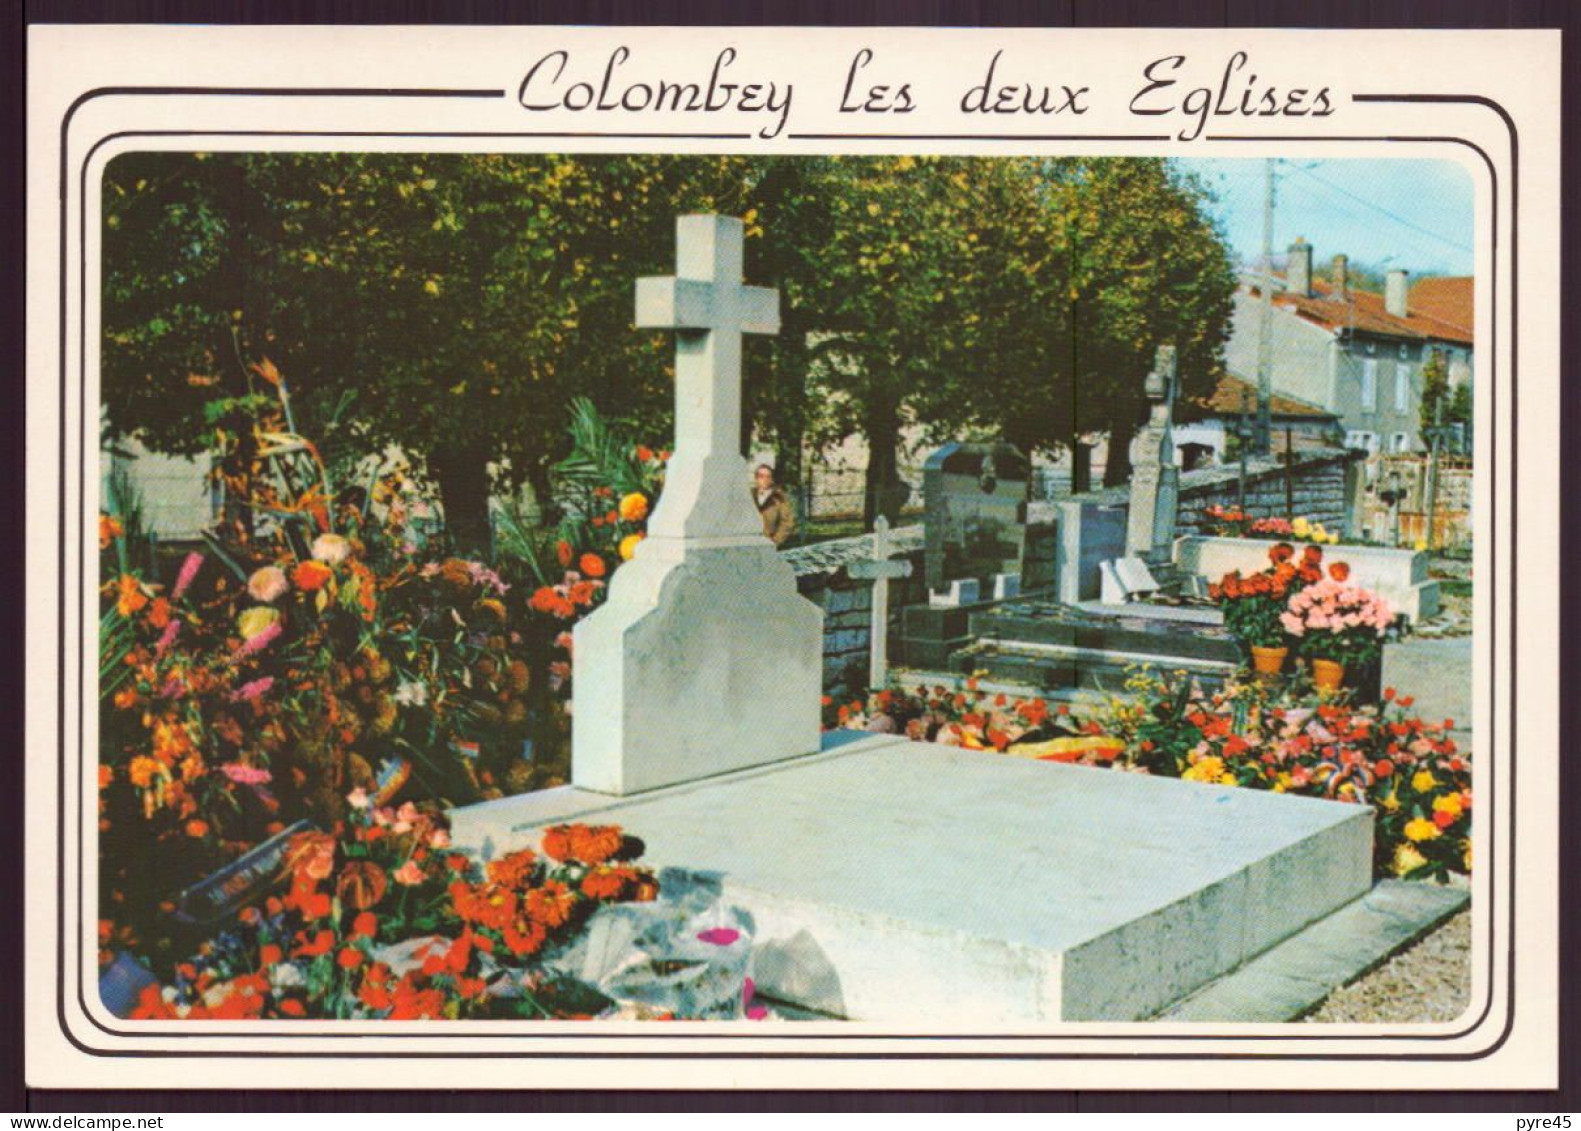 COLOMBEY LES DEUX EGLISES SEPULTURE DU GENERAL DE GAULLE 52 - Colombey Les Deux Eglises